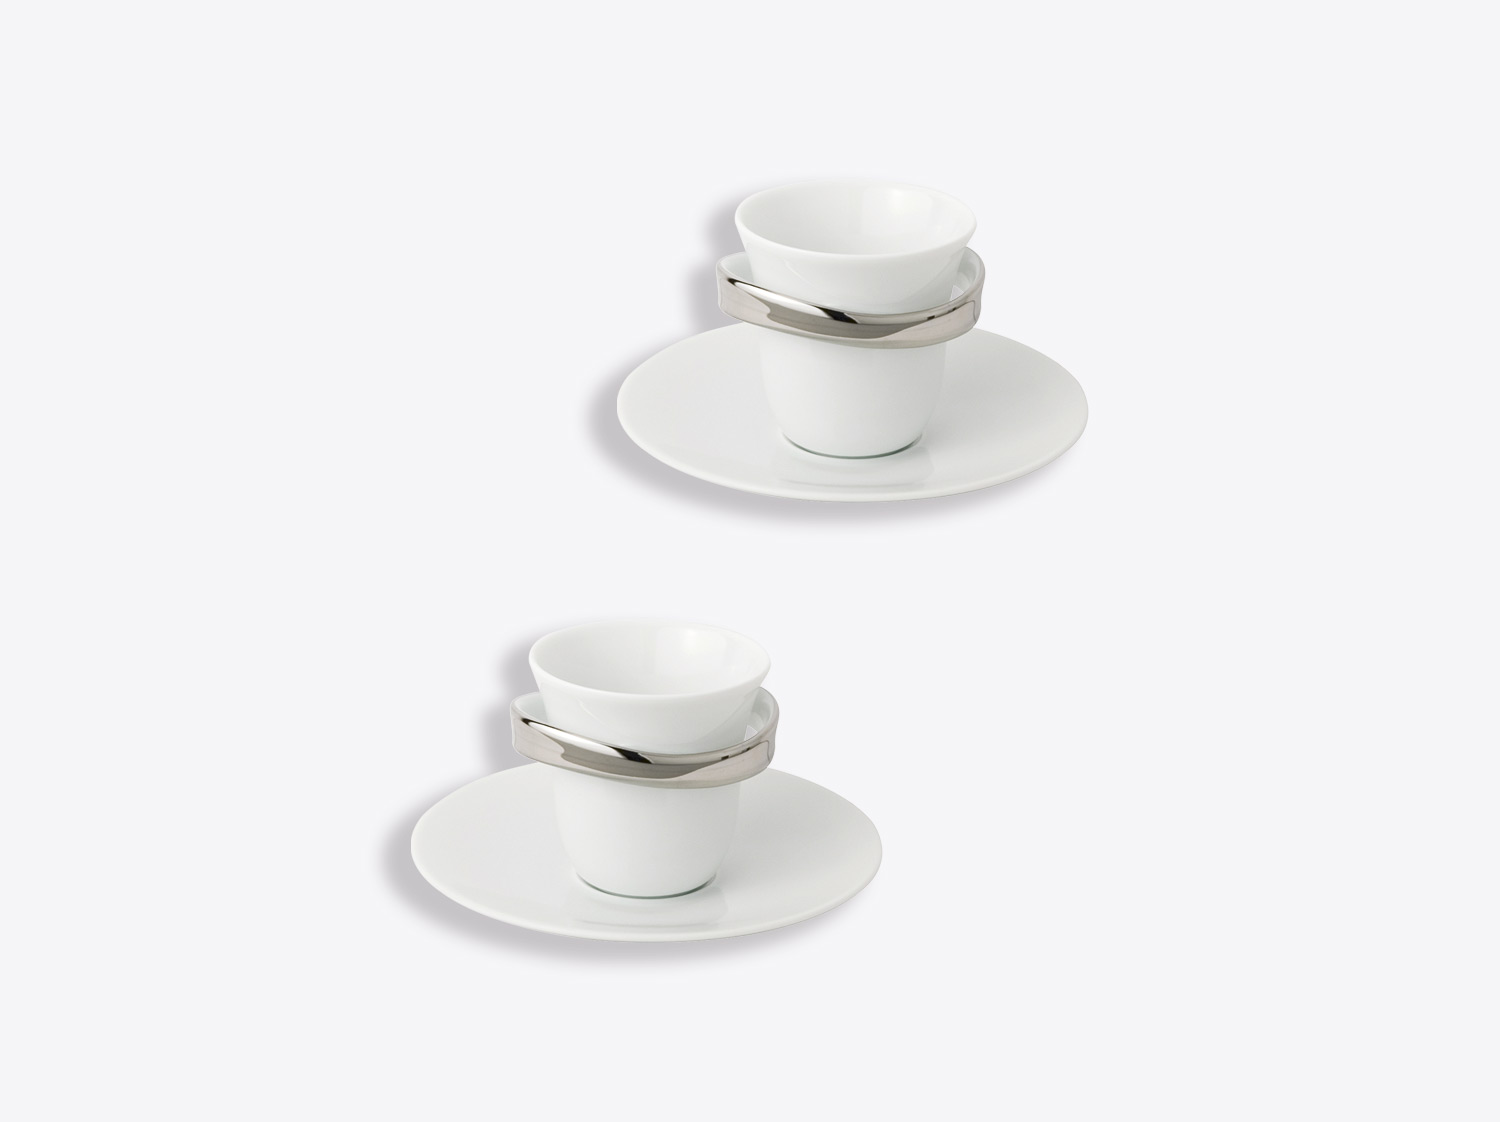 Espresso cup and saucer 1.7 oz Espresso Cups